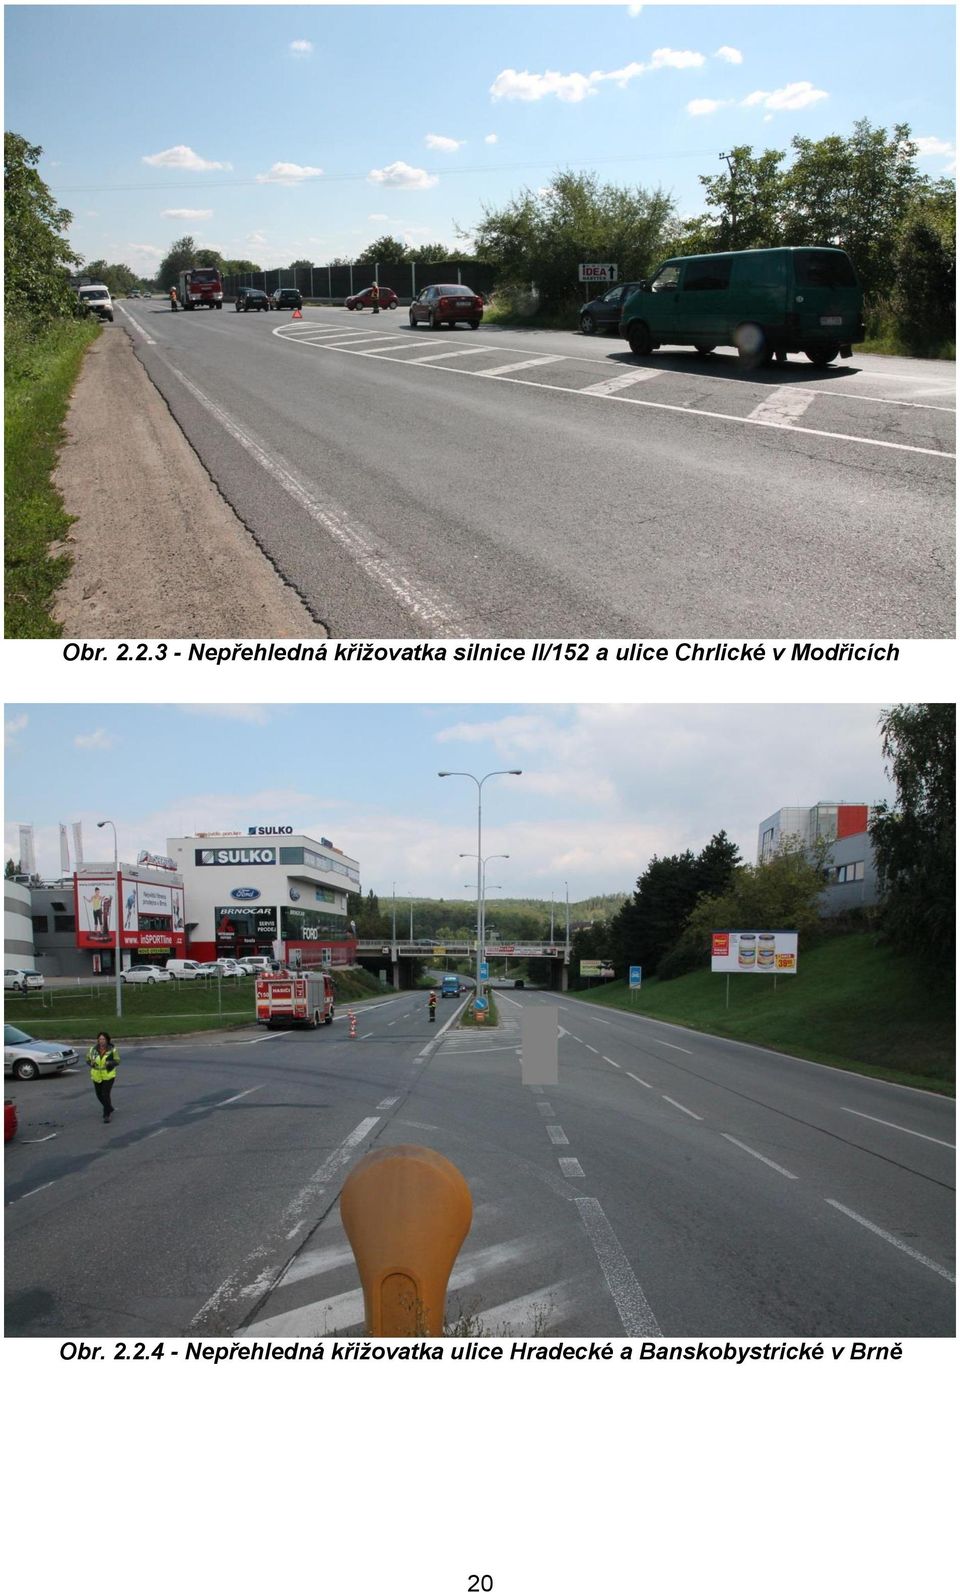 II/152 a ulice Chrlické v Modřicích 2.